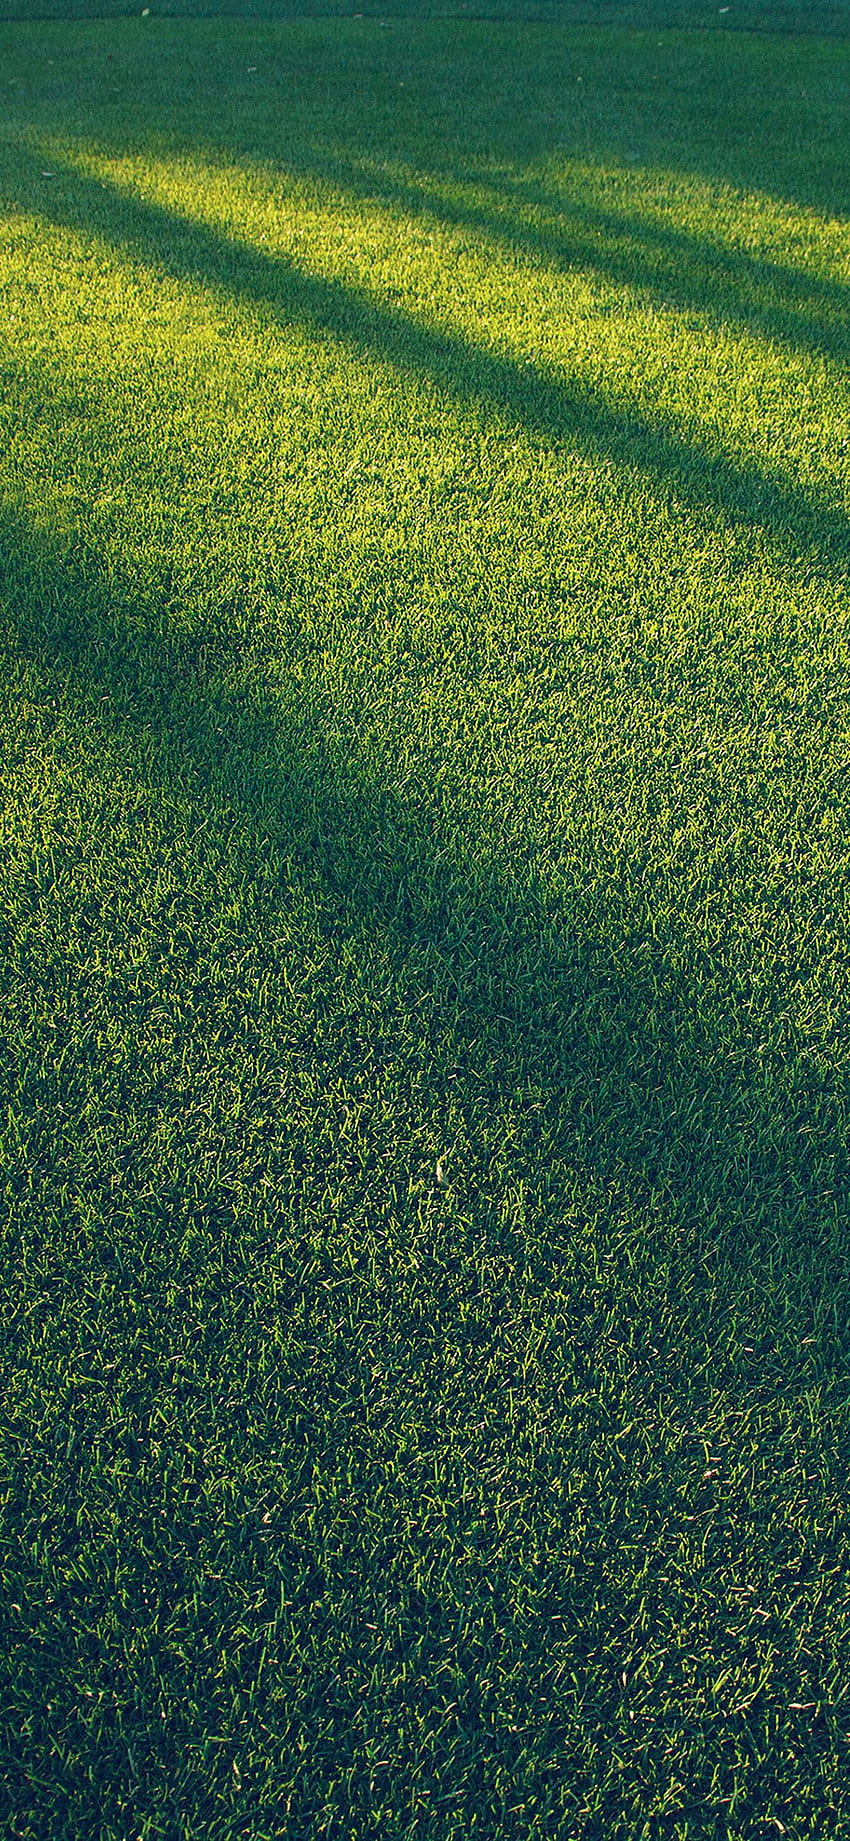 Vj86 Lawn Grass Sunlight Green Blue Pattern - iPhone Grass HD phone wallpaper